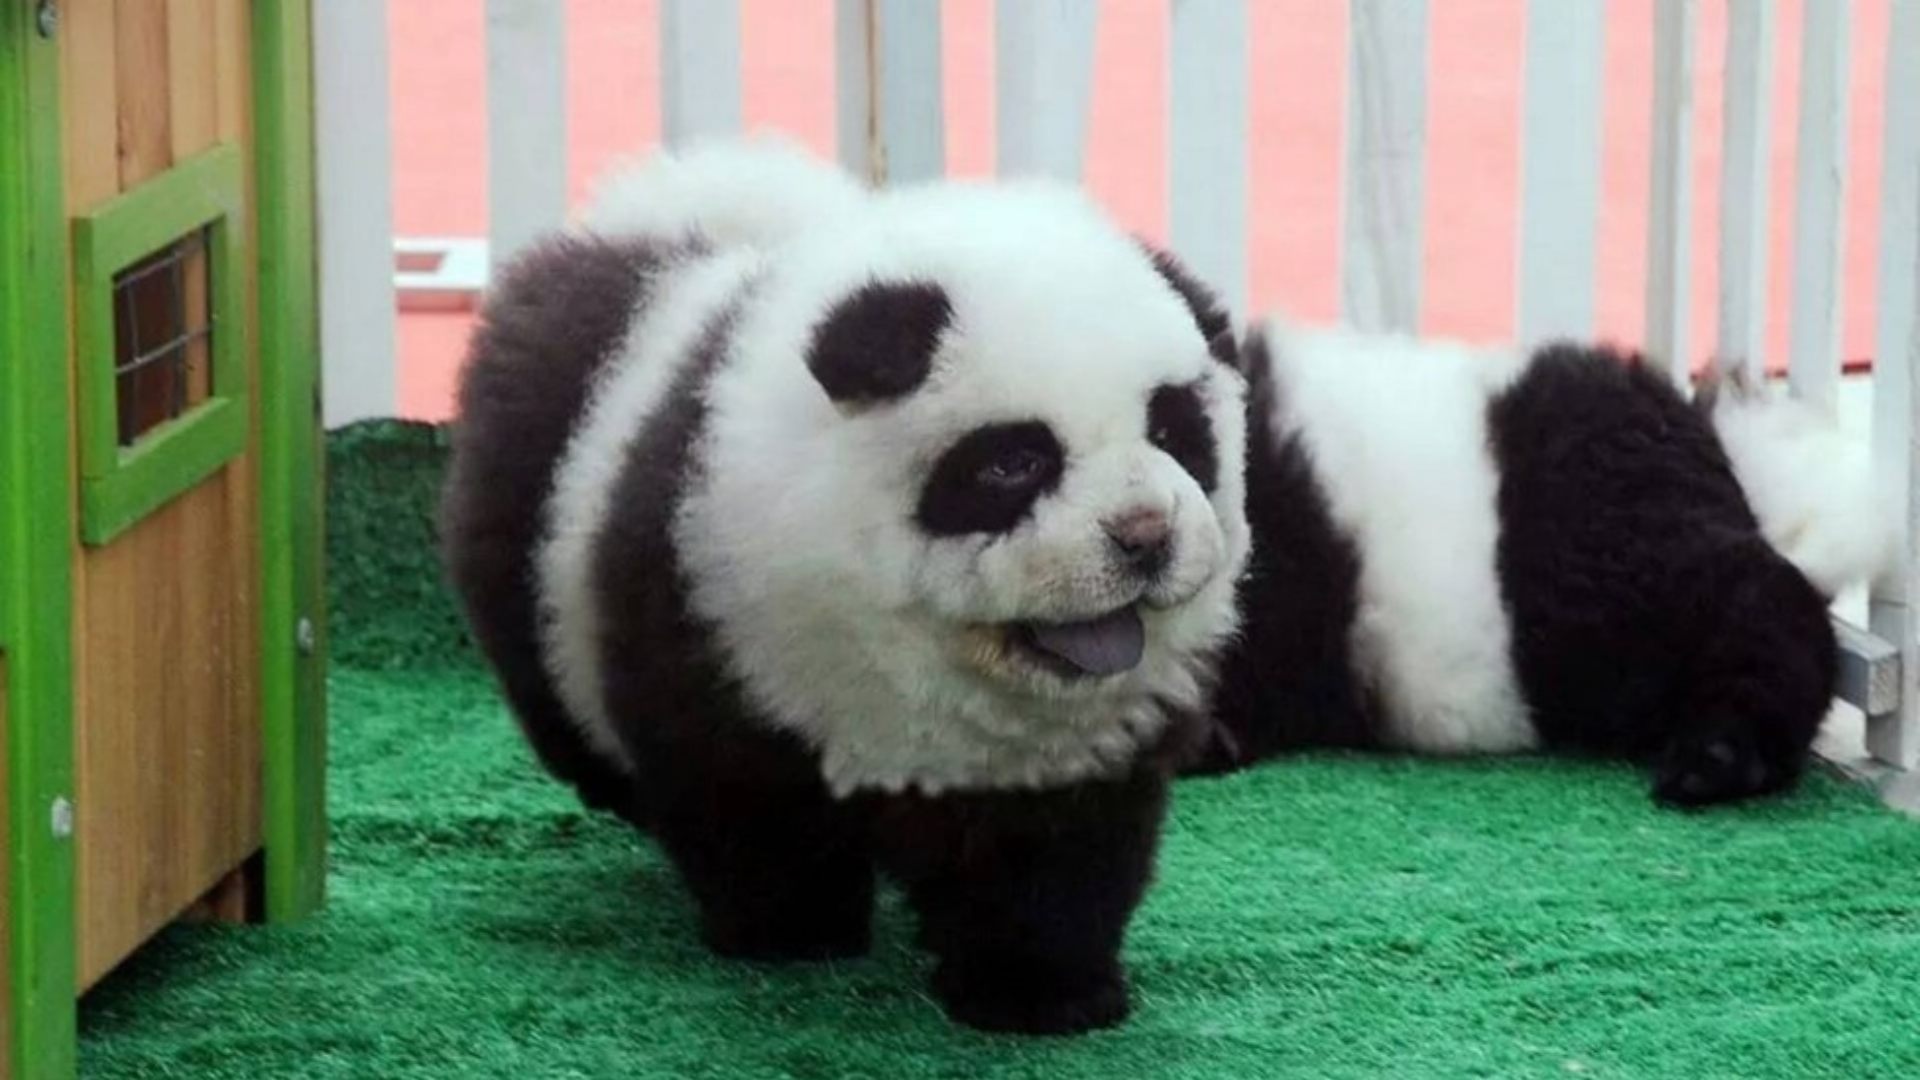 "Los pintaron" Zoológico es denunciado por hacer pasar perros por pandas